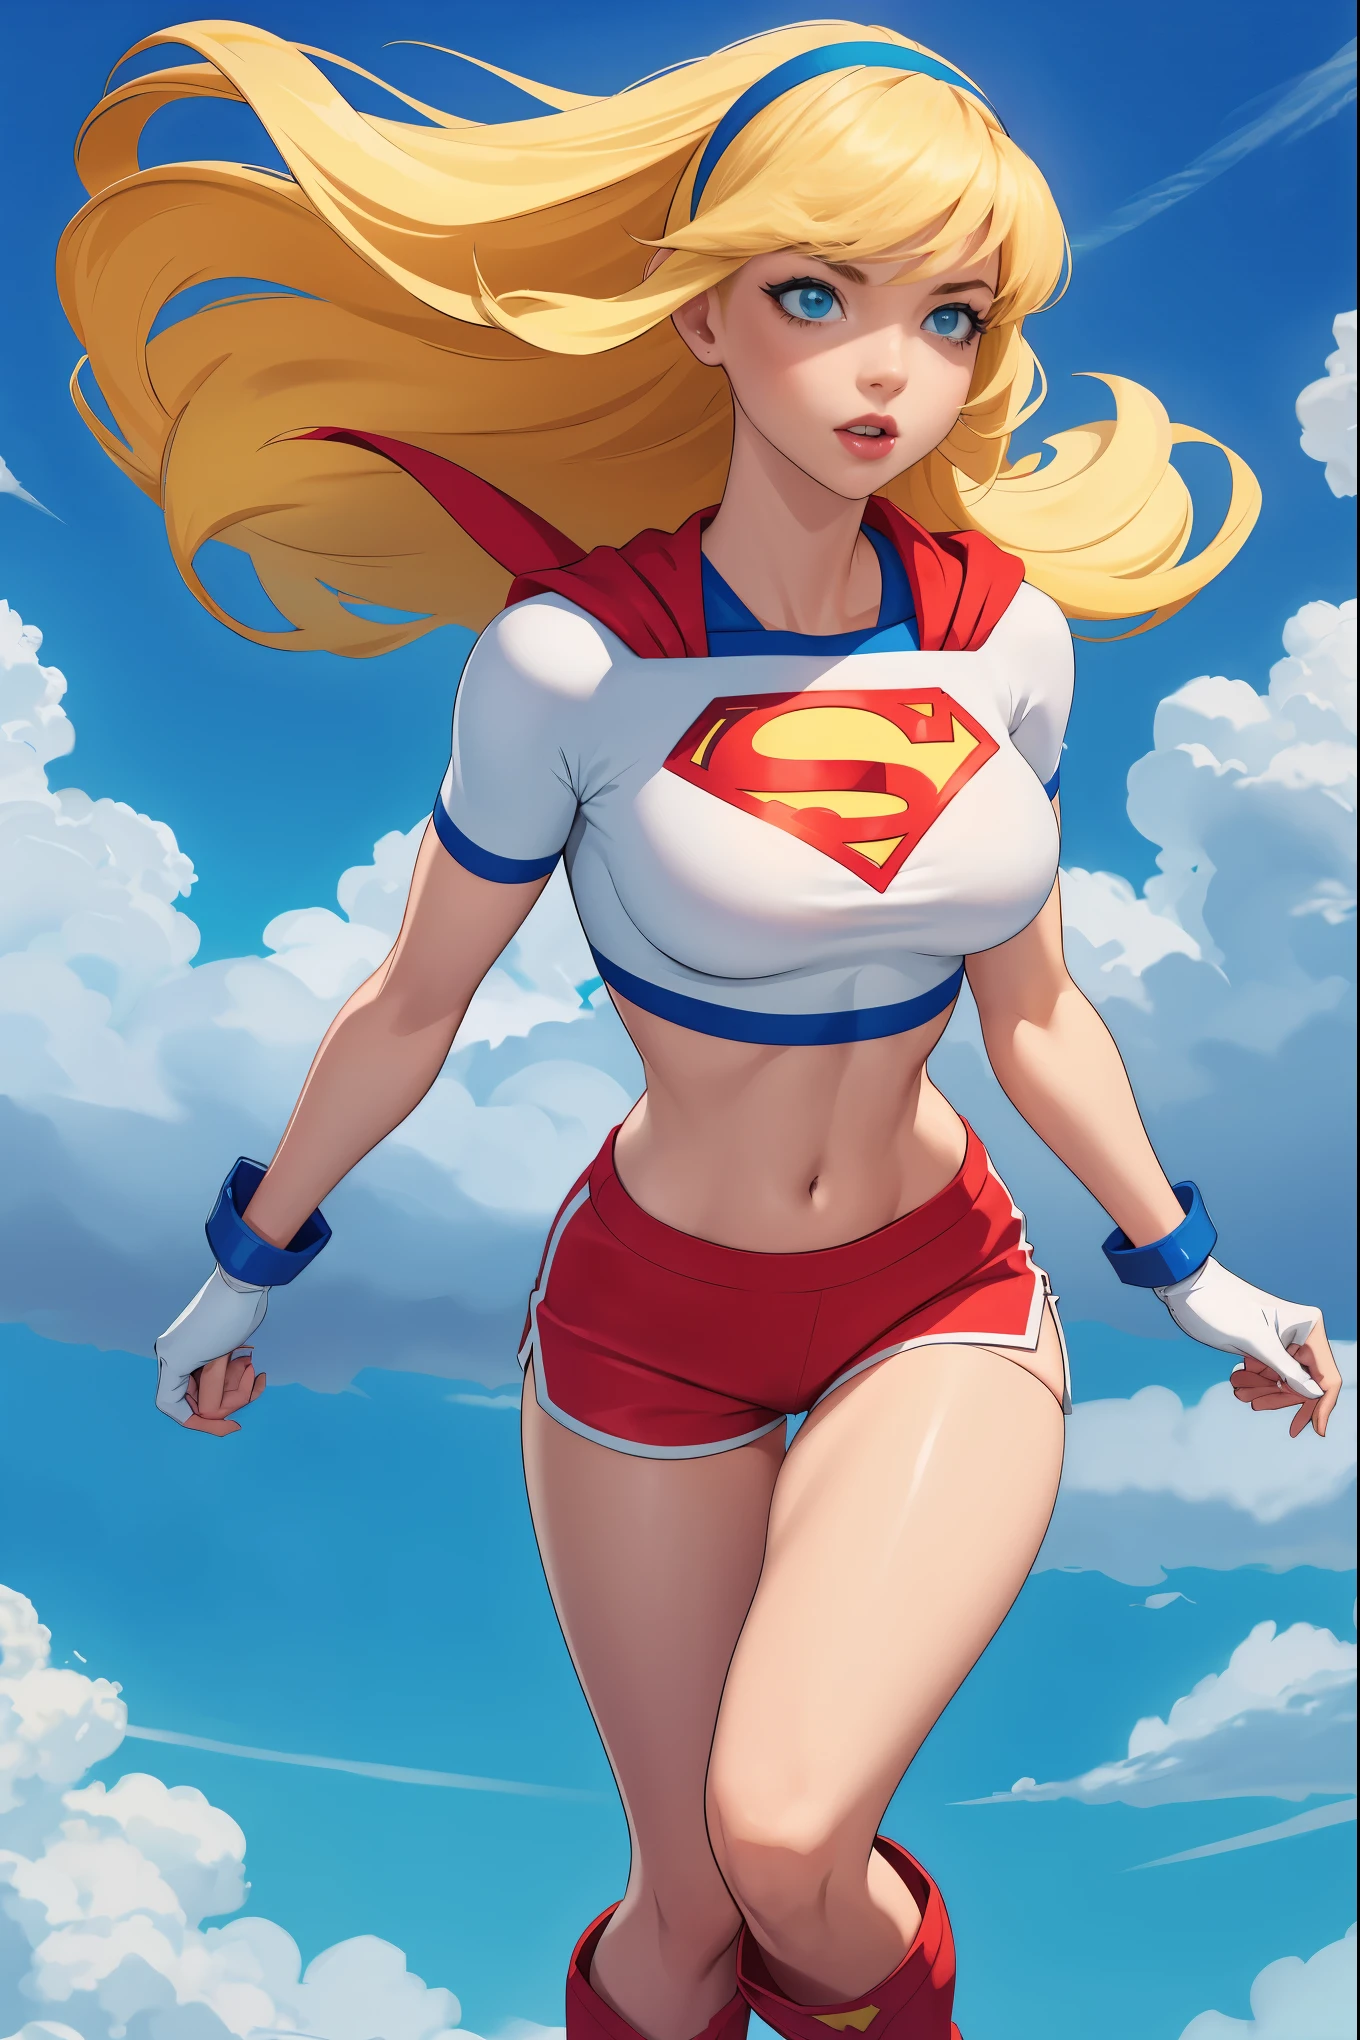 Supergirl,1 garota,Cabelo loiro comprido,elástico de cabelo,Top branco,shorts de golfinho, luvas brancas,botas, flutuando nas nuvens, seios grandes, meia camisa mostrando a metade inferior dos seios, dinâmico, Sensual, sacanagem